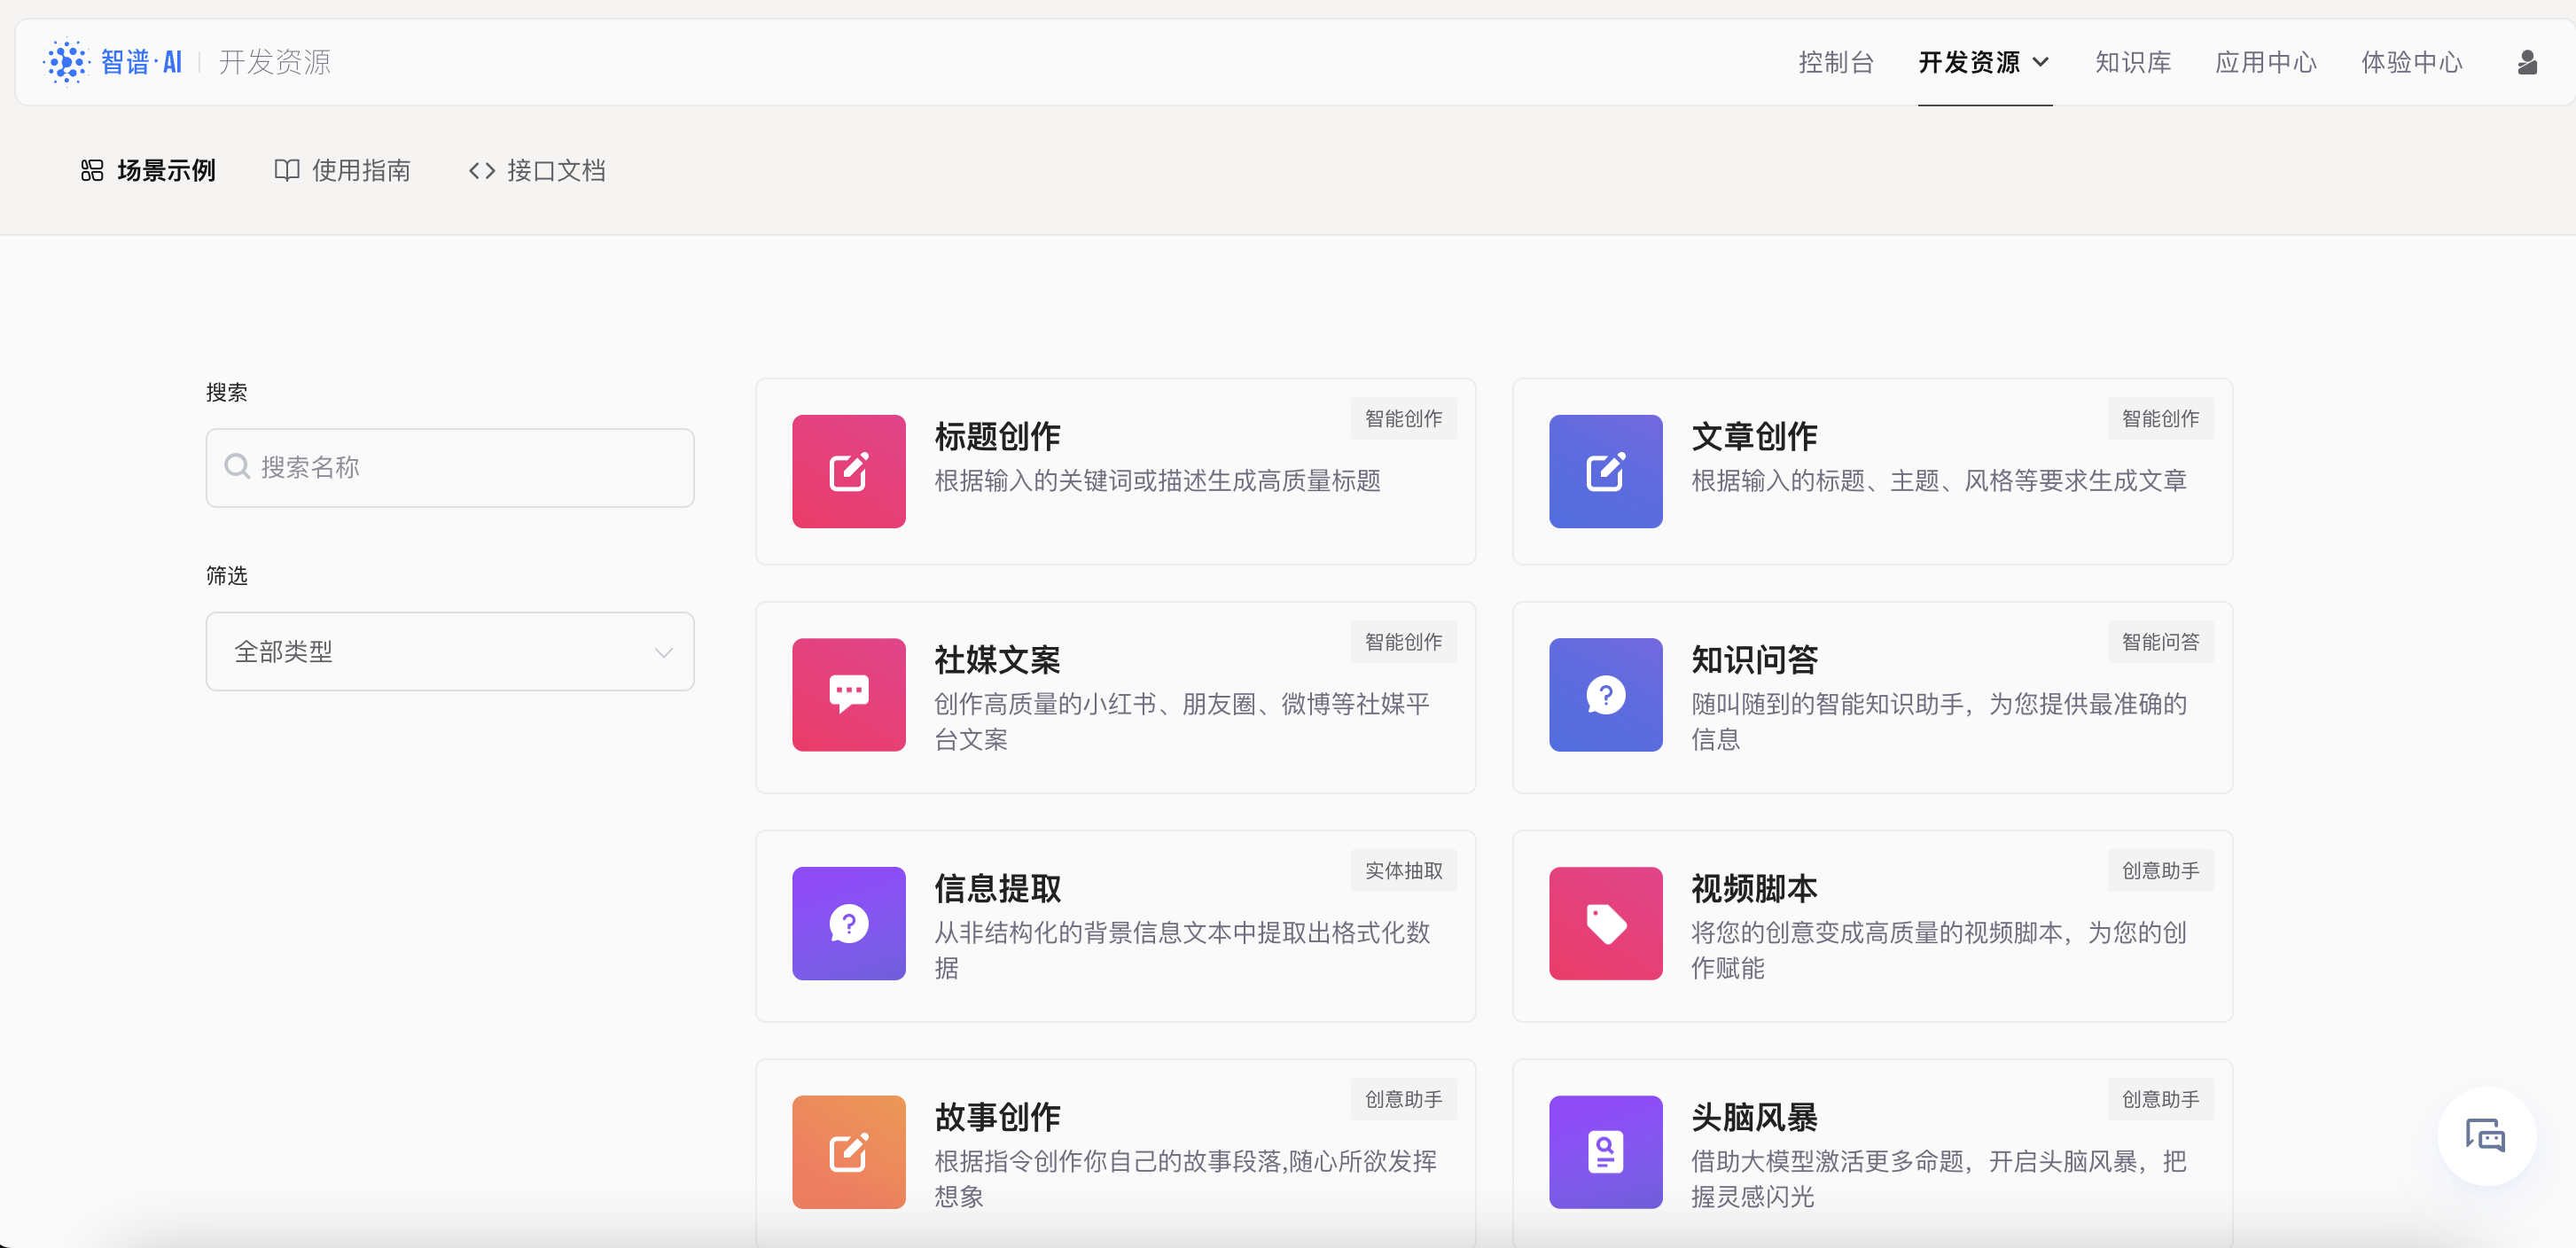 Zhipu AI home page screenshot